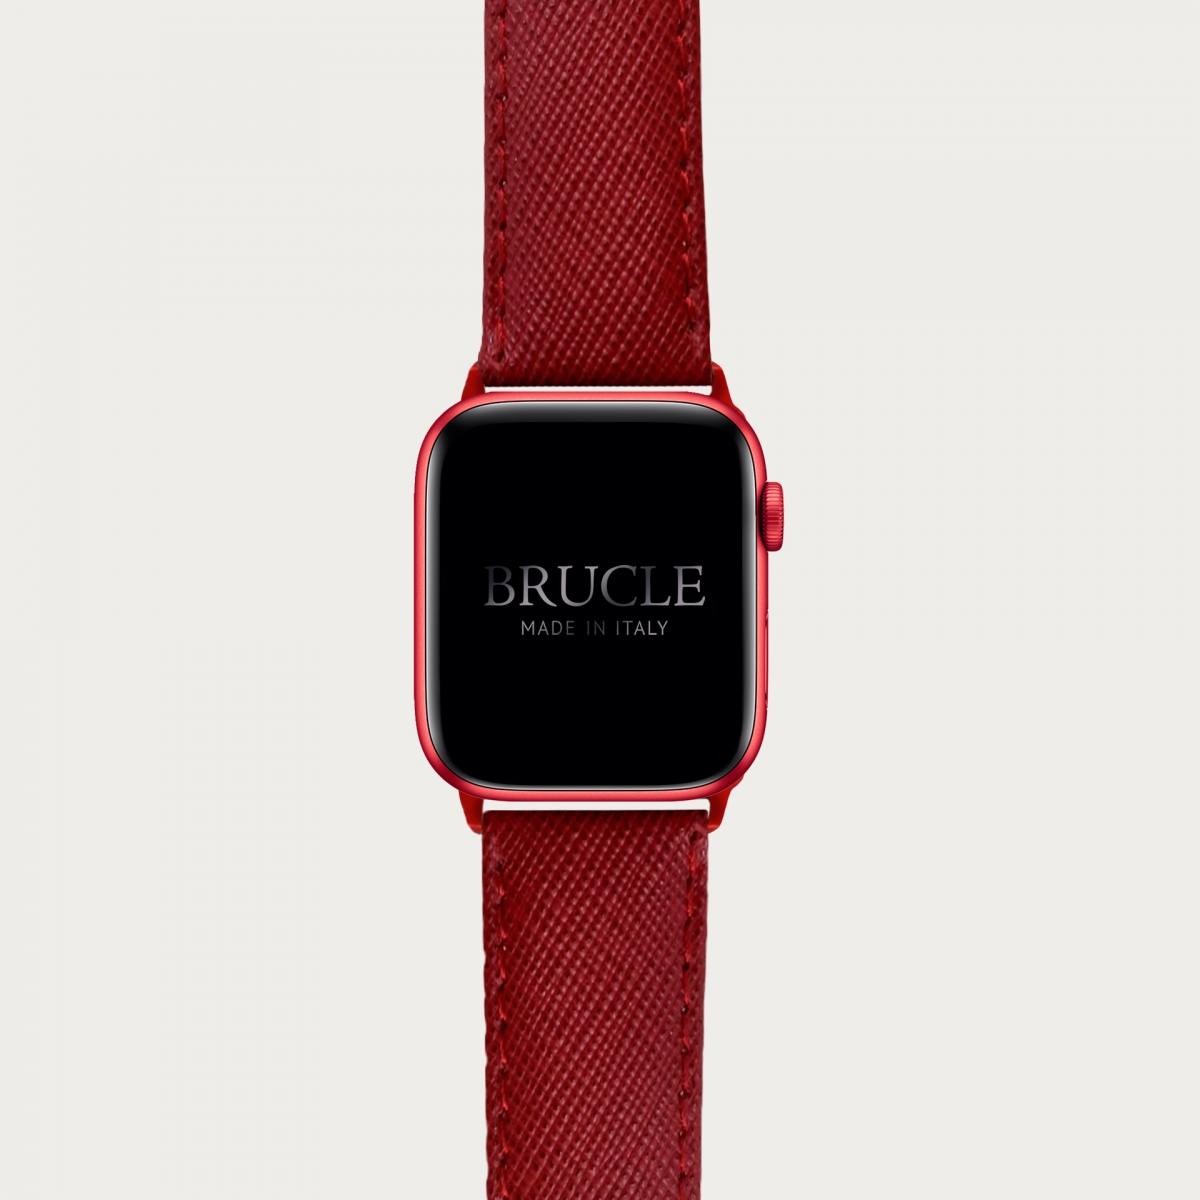 Correa de reloj compatible con Apple Watch / Samsung smartwatch, rojo Saffiano